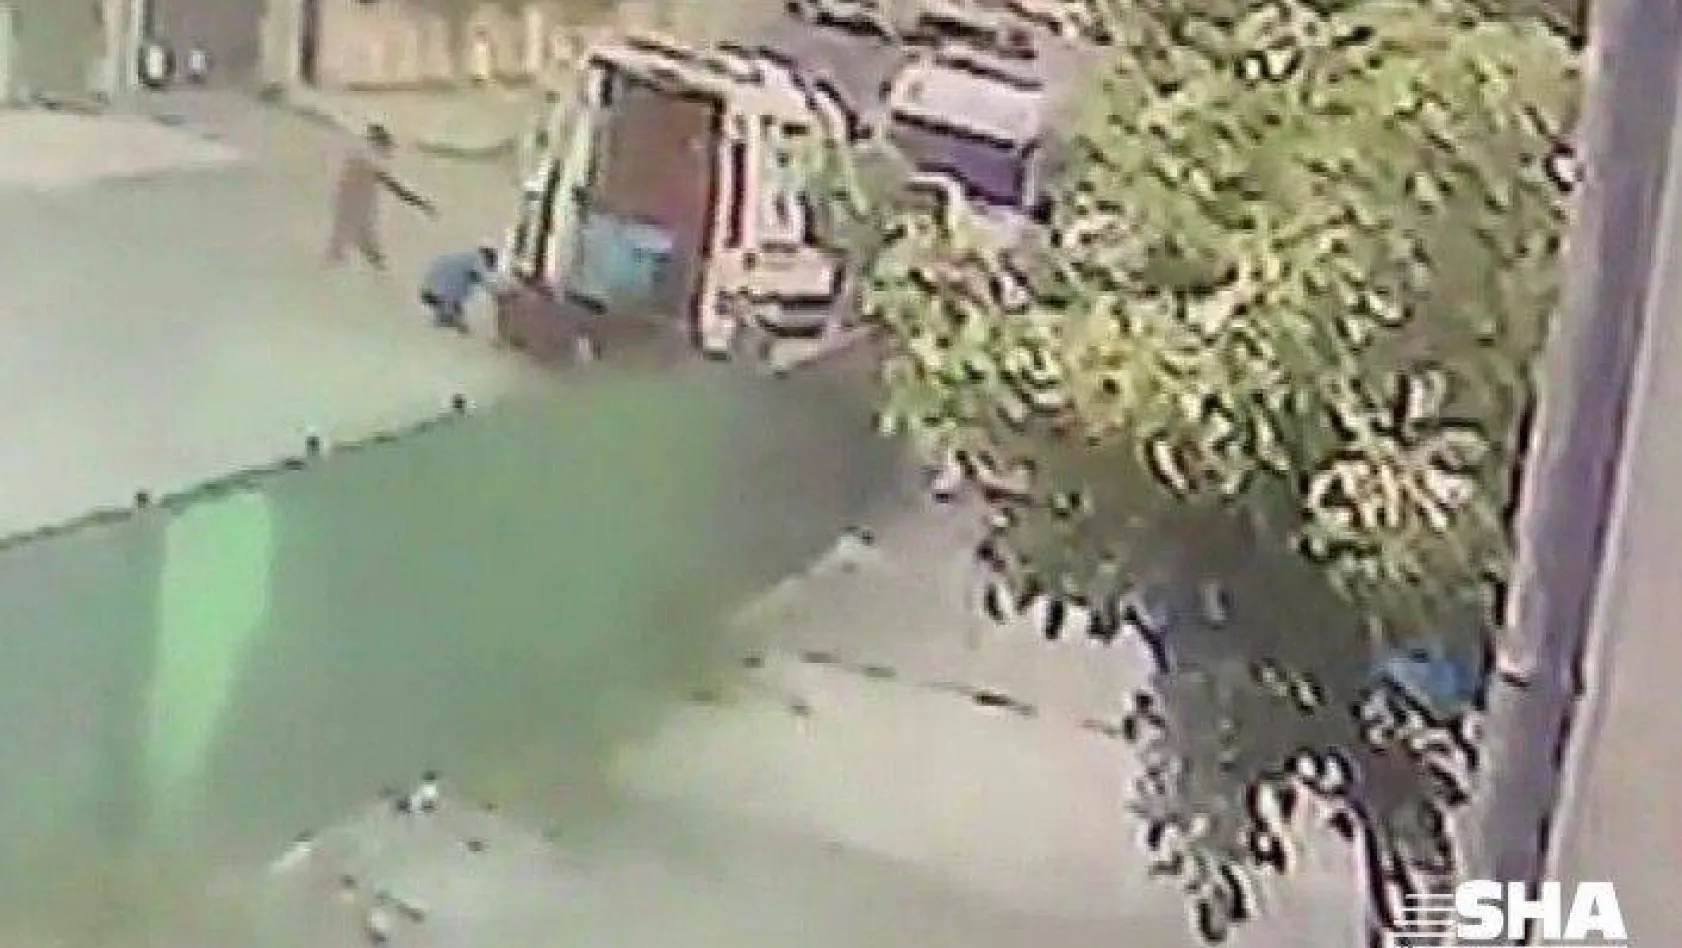 Pendik'te ambulans şoförü silahlı saldırıya uğradı